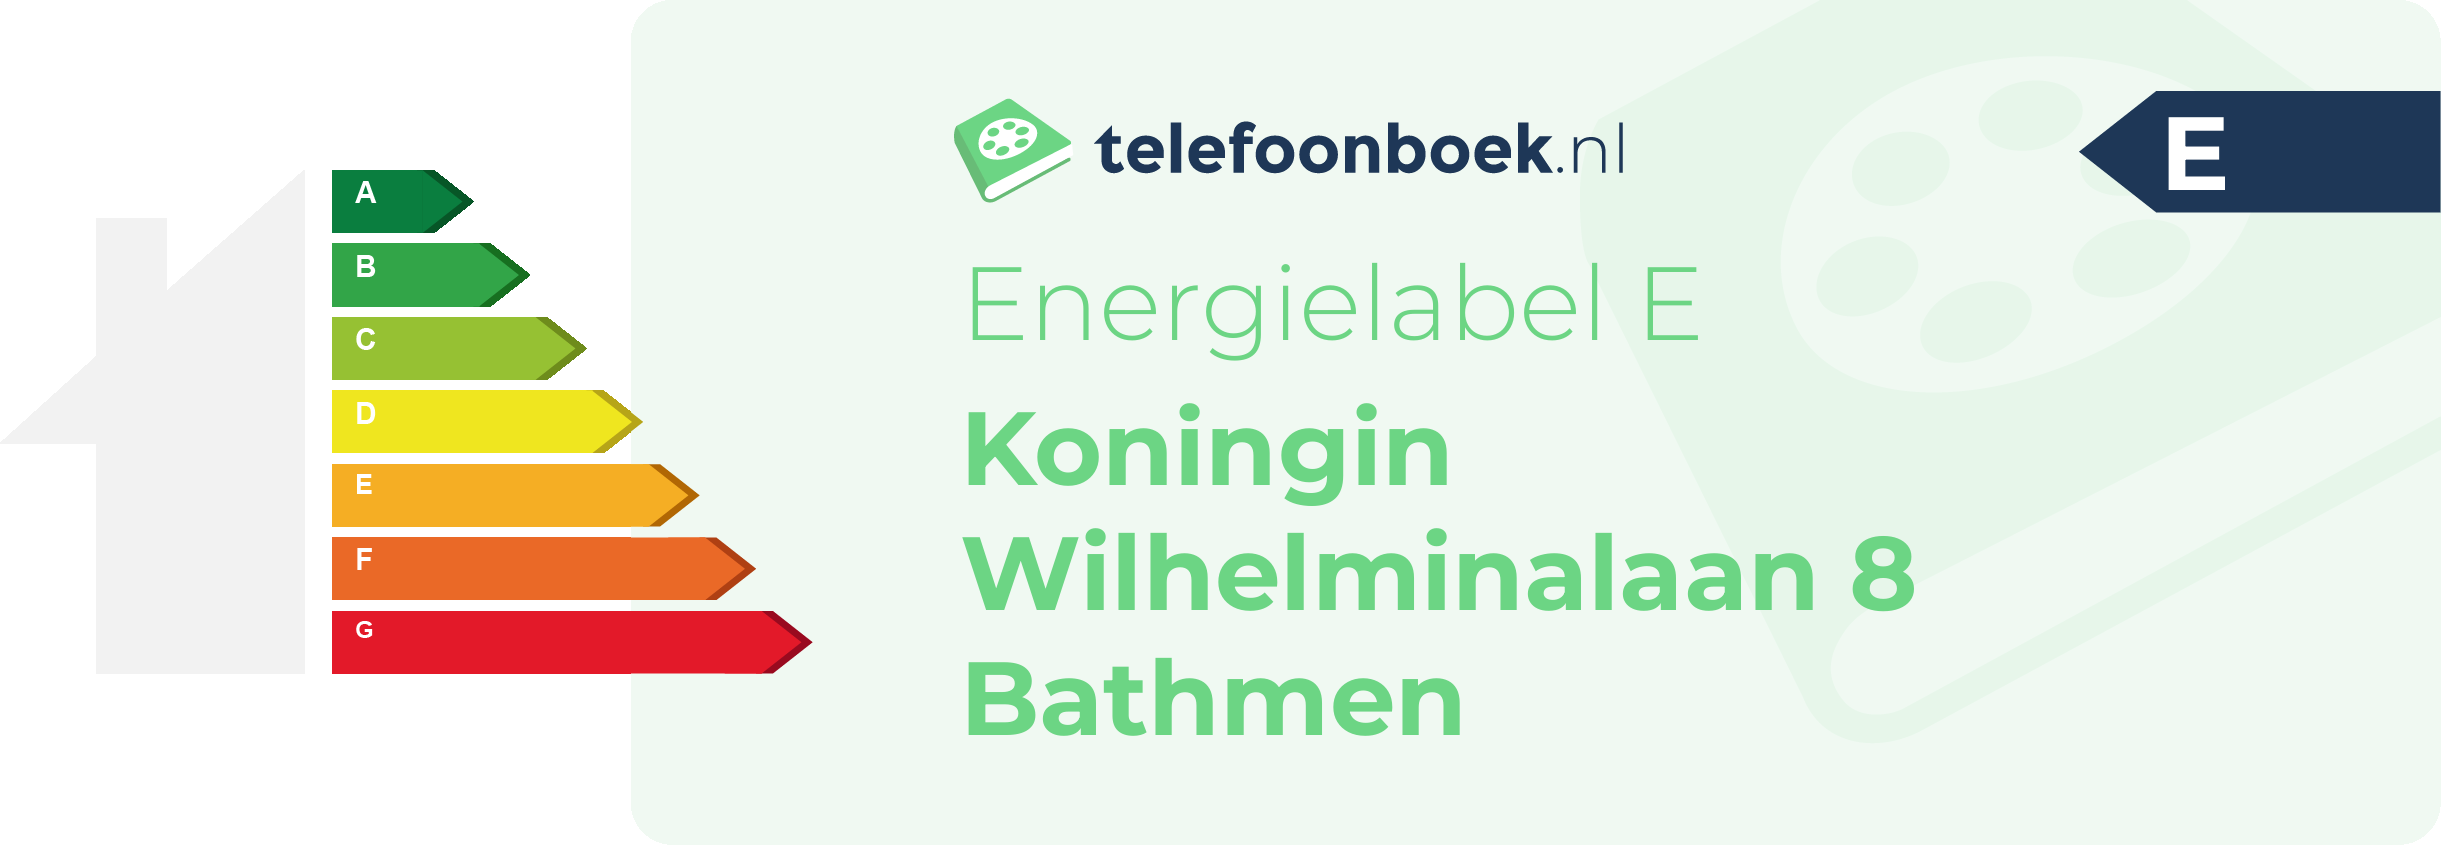 Energielabel Koningin Wilhelminalaan 8 Bathmen